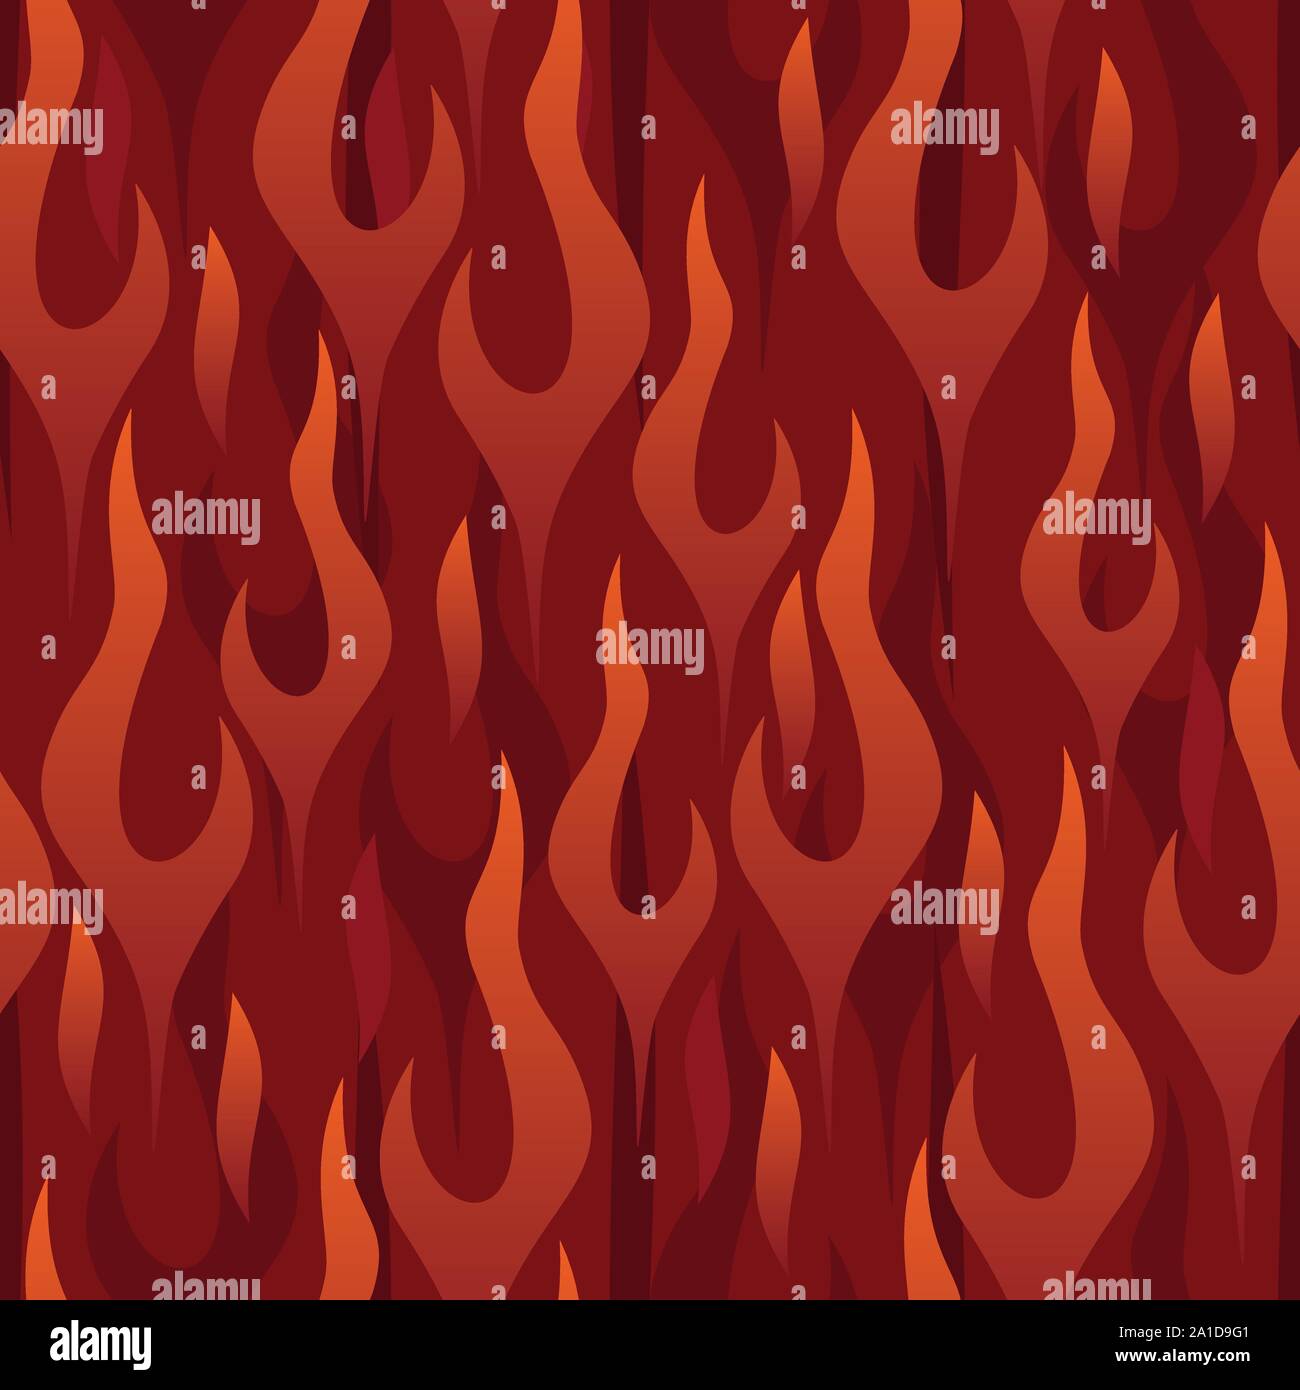 Rote Flammen die nahtlose, sich wiederholendes Muster Vector Illustration Stock Vektor